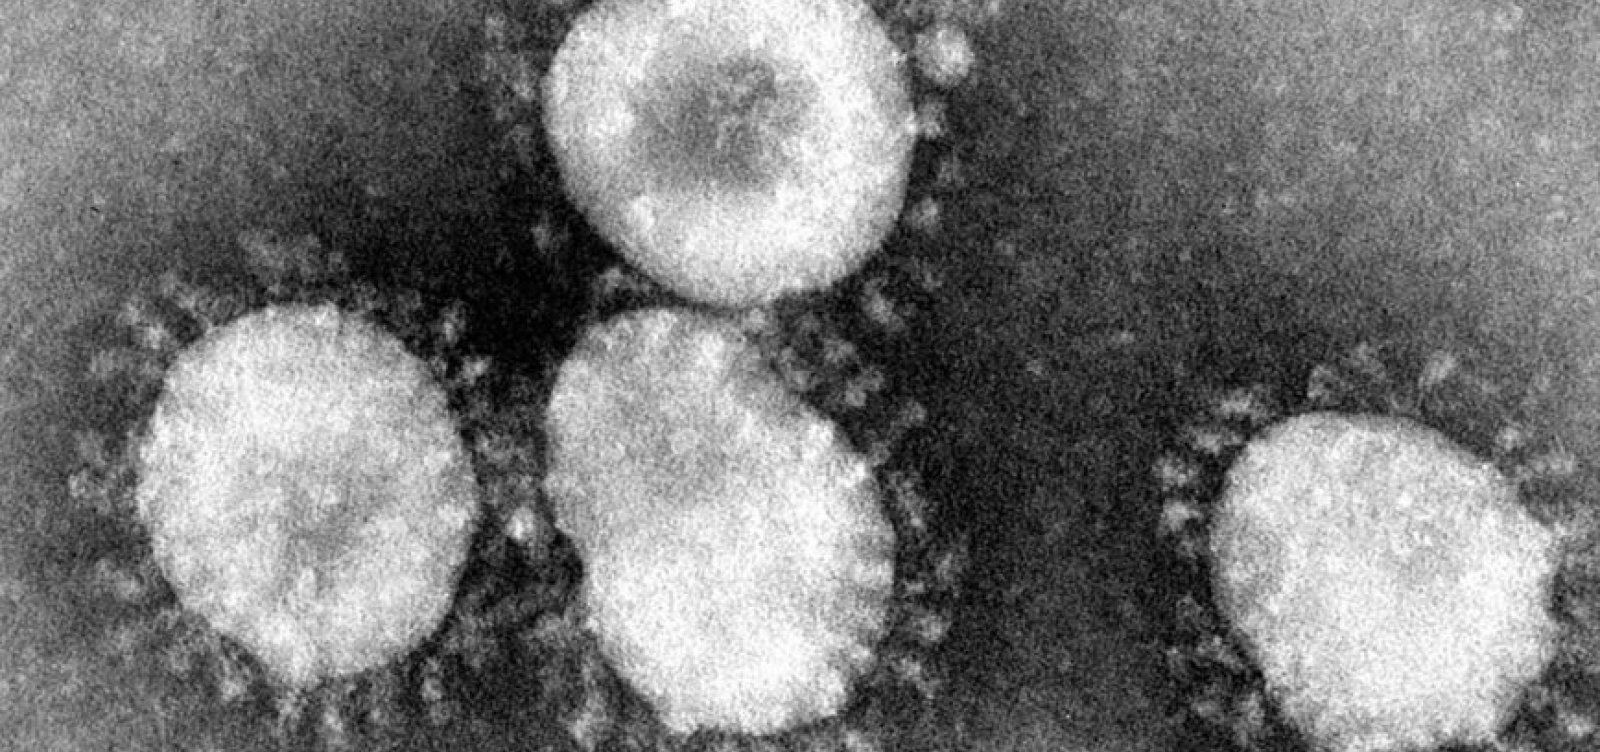 Sars CoV-2 é capaz de infectar tecido adiposo, aponta estudo da Unicamp